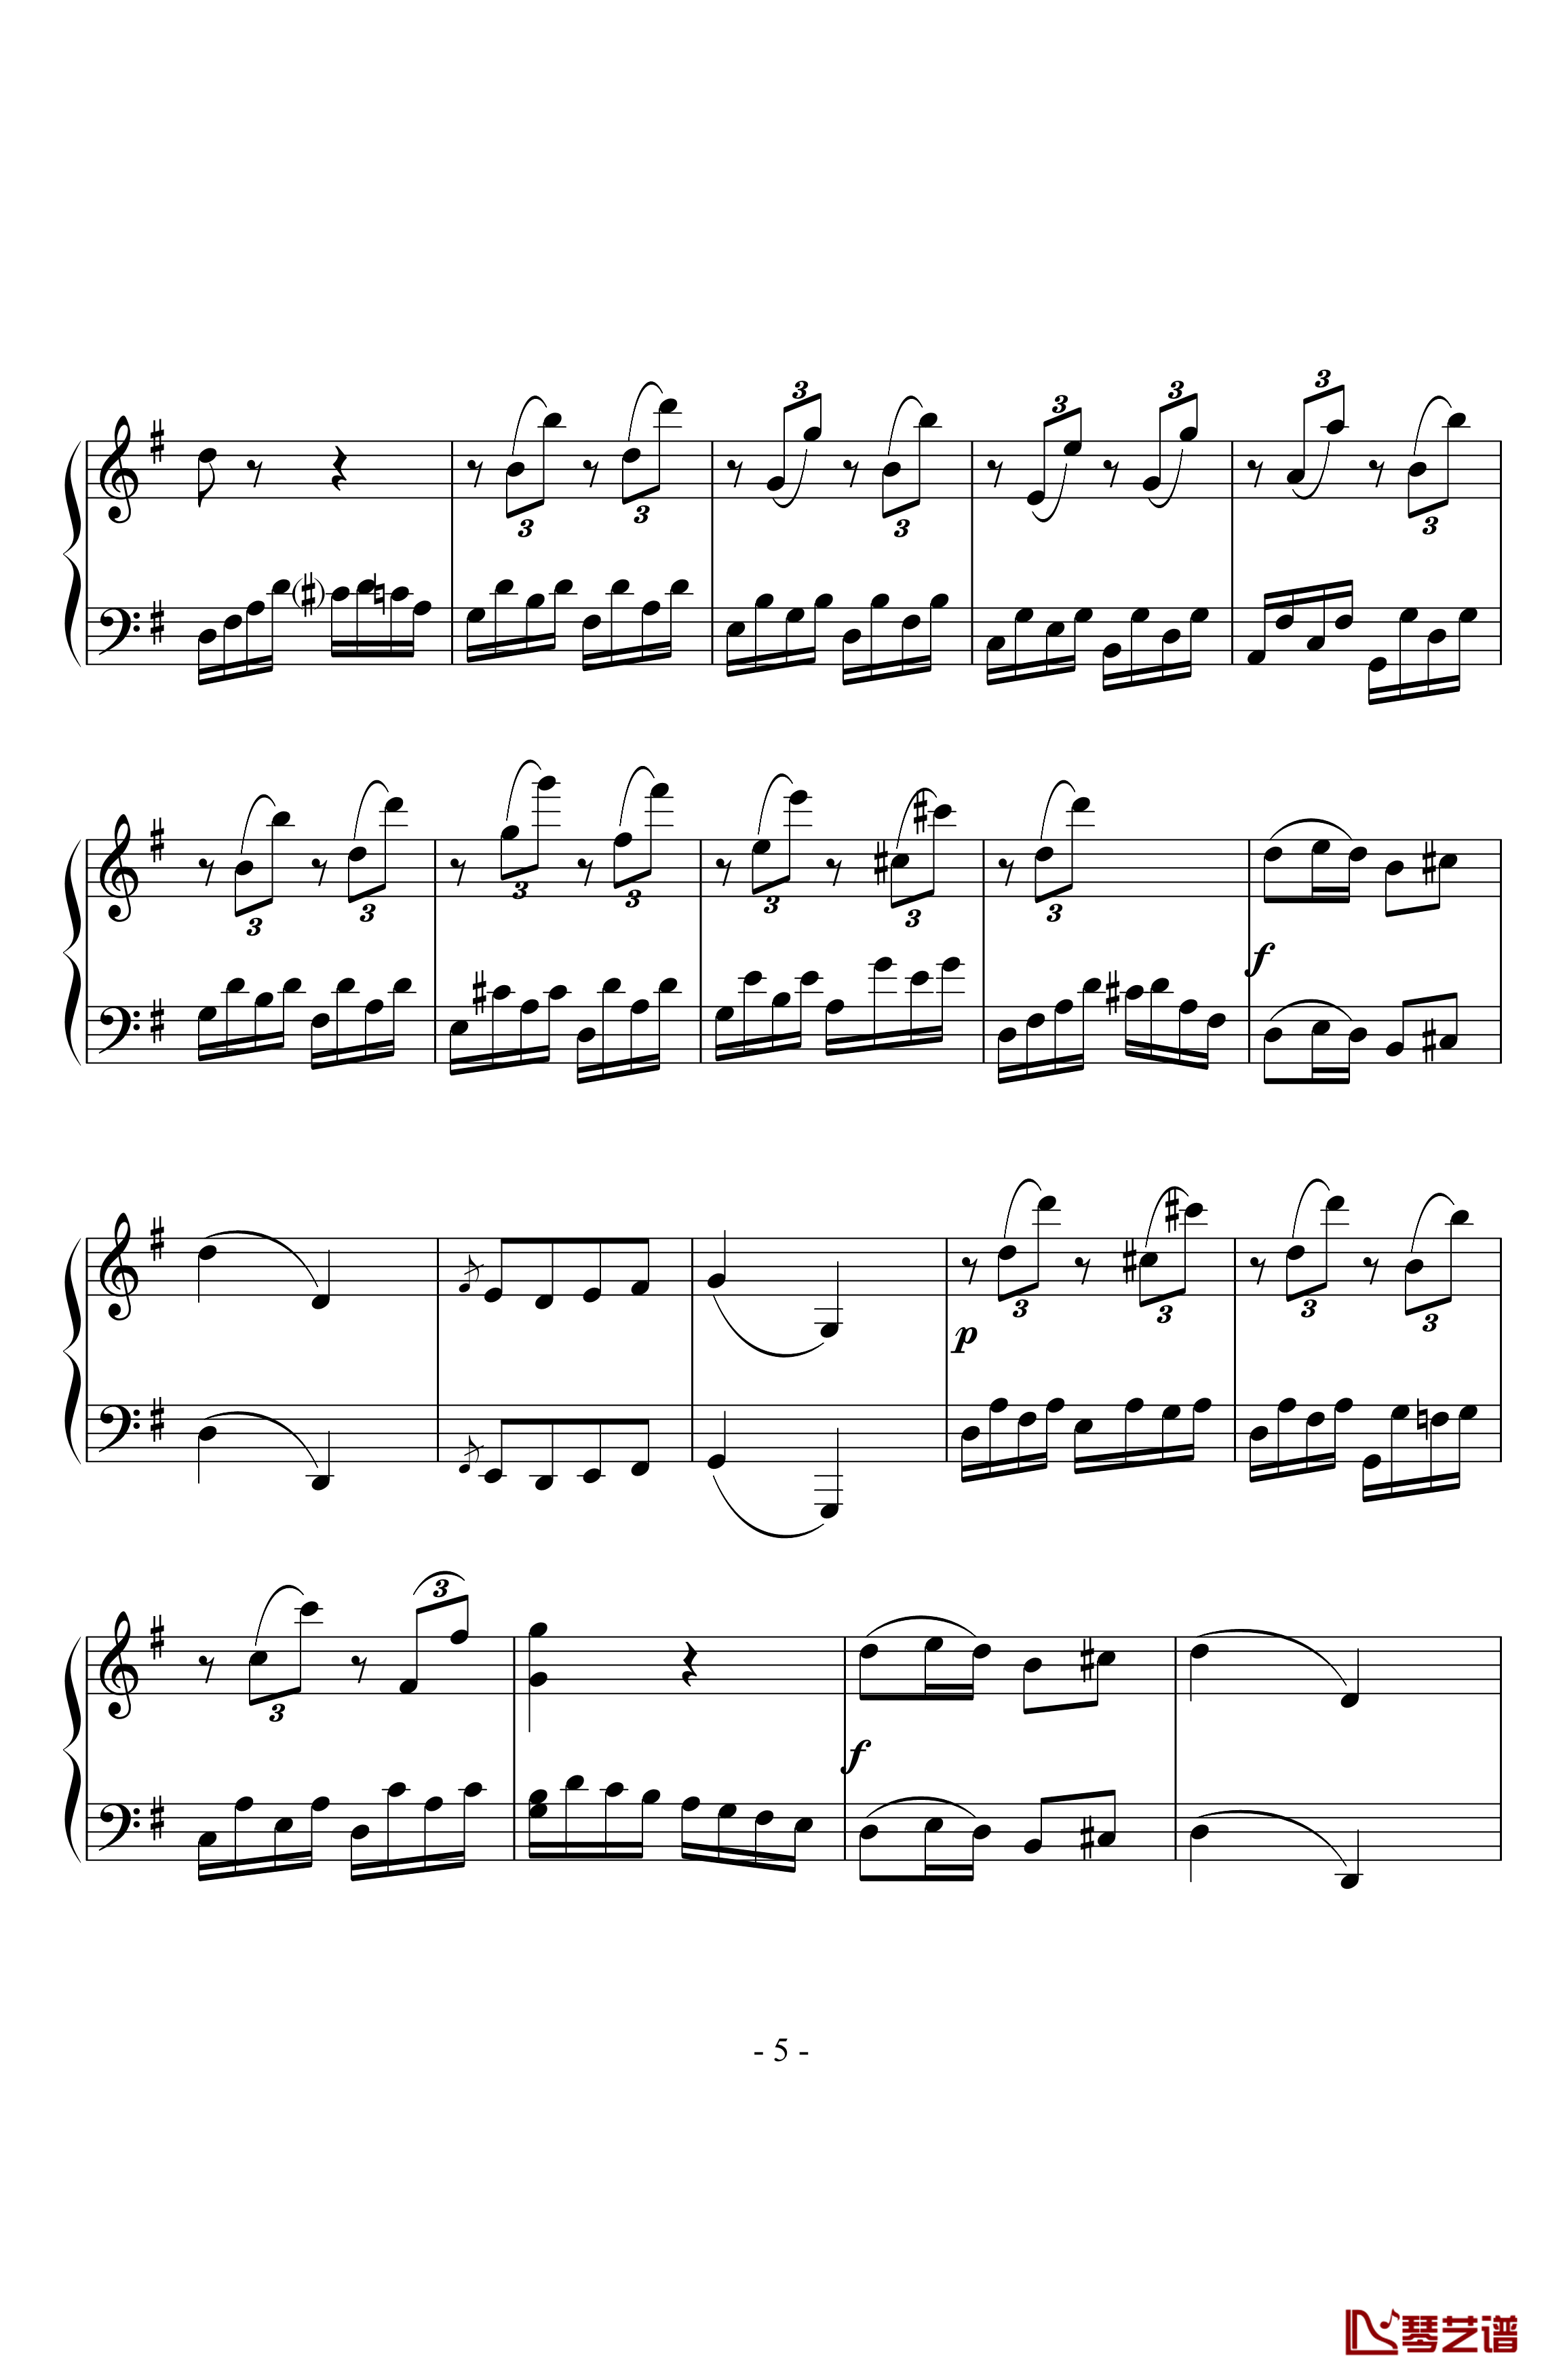 贝多芬第二十五钢琴奏鸣曲钢琴谱-贝多芬-beethoven5